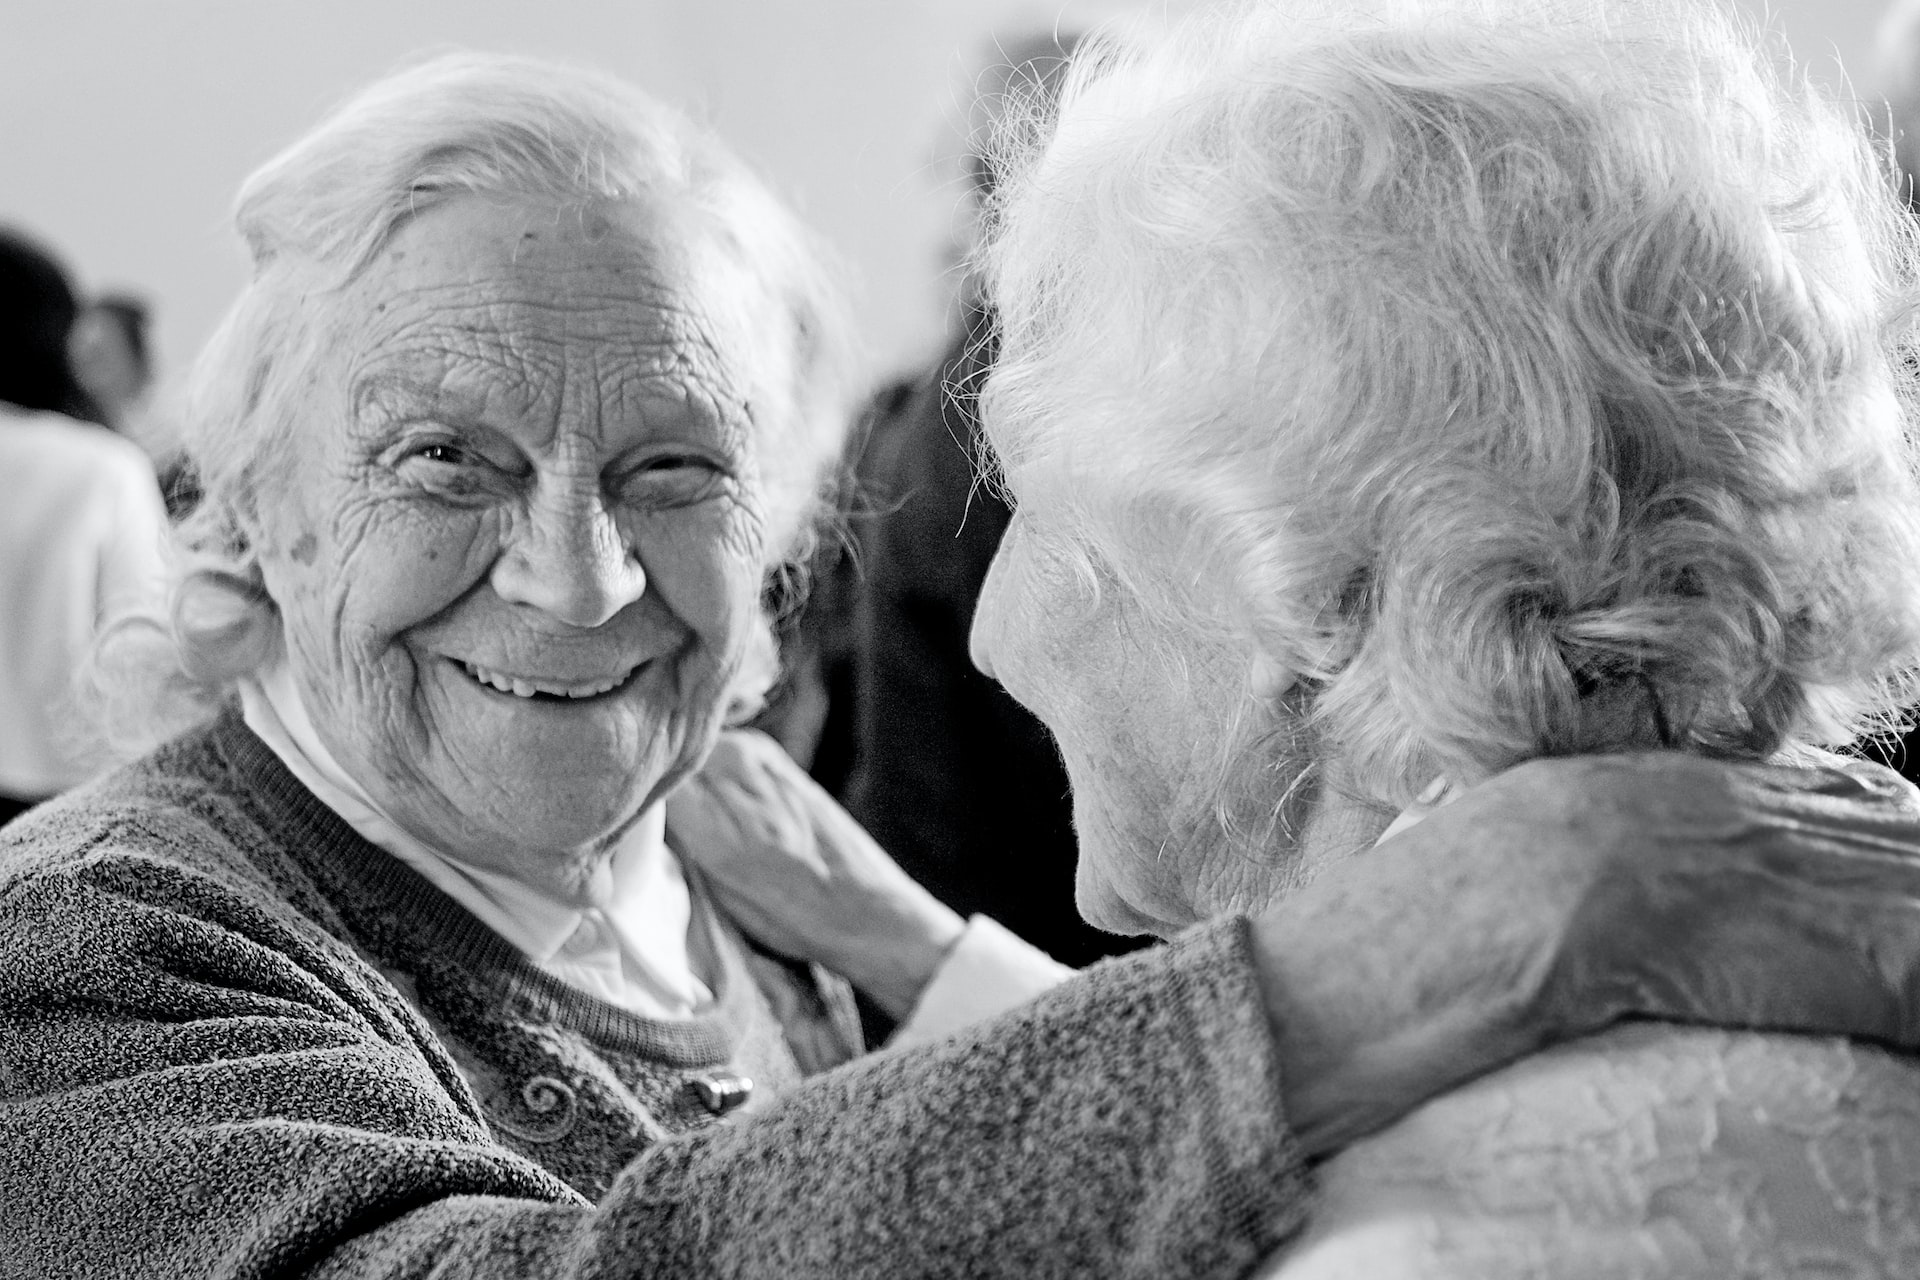 Nie żyje najstarsza mieszkanka powiatu krotoszyńskiego. Miała 104 lata!